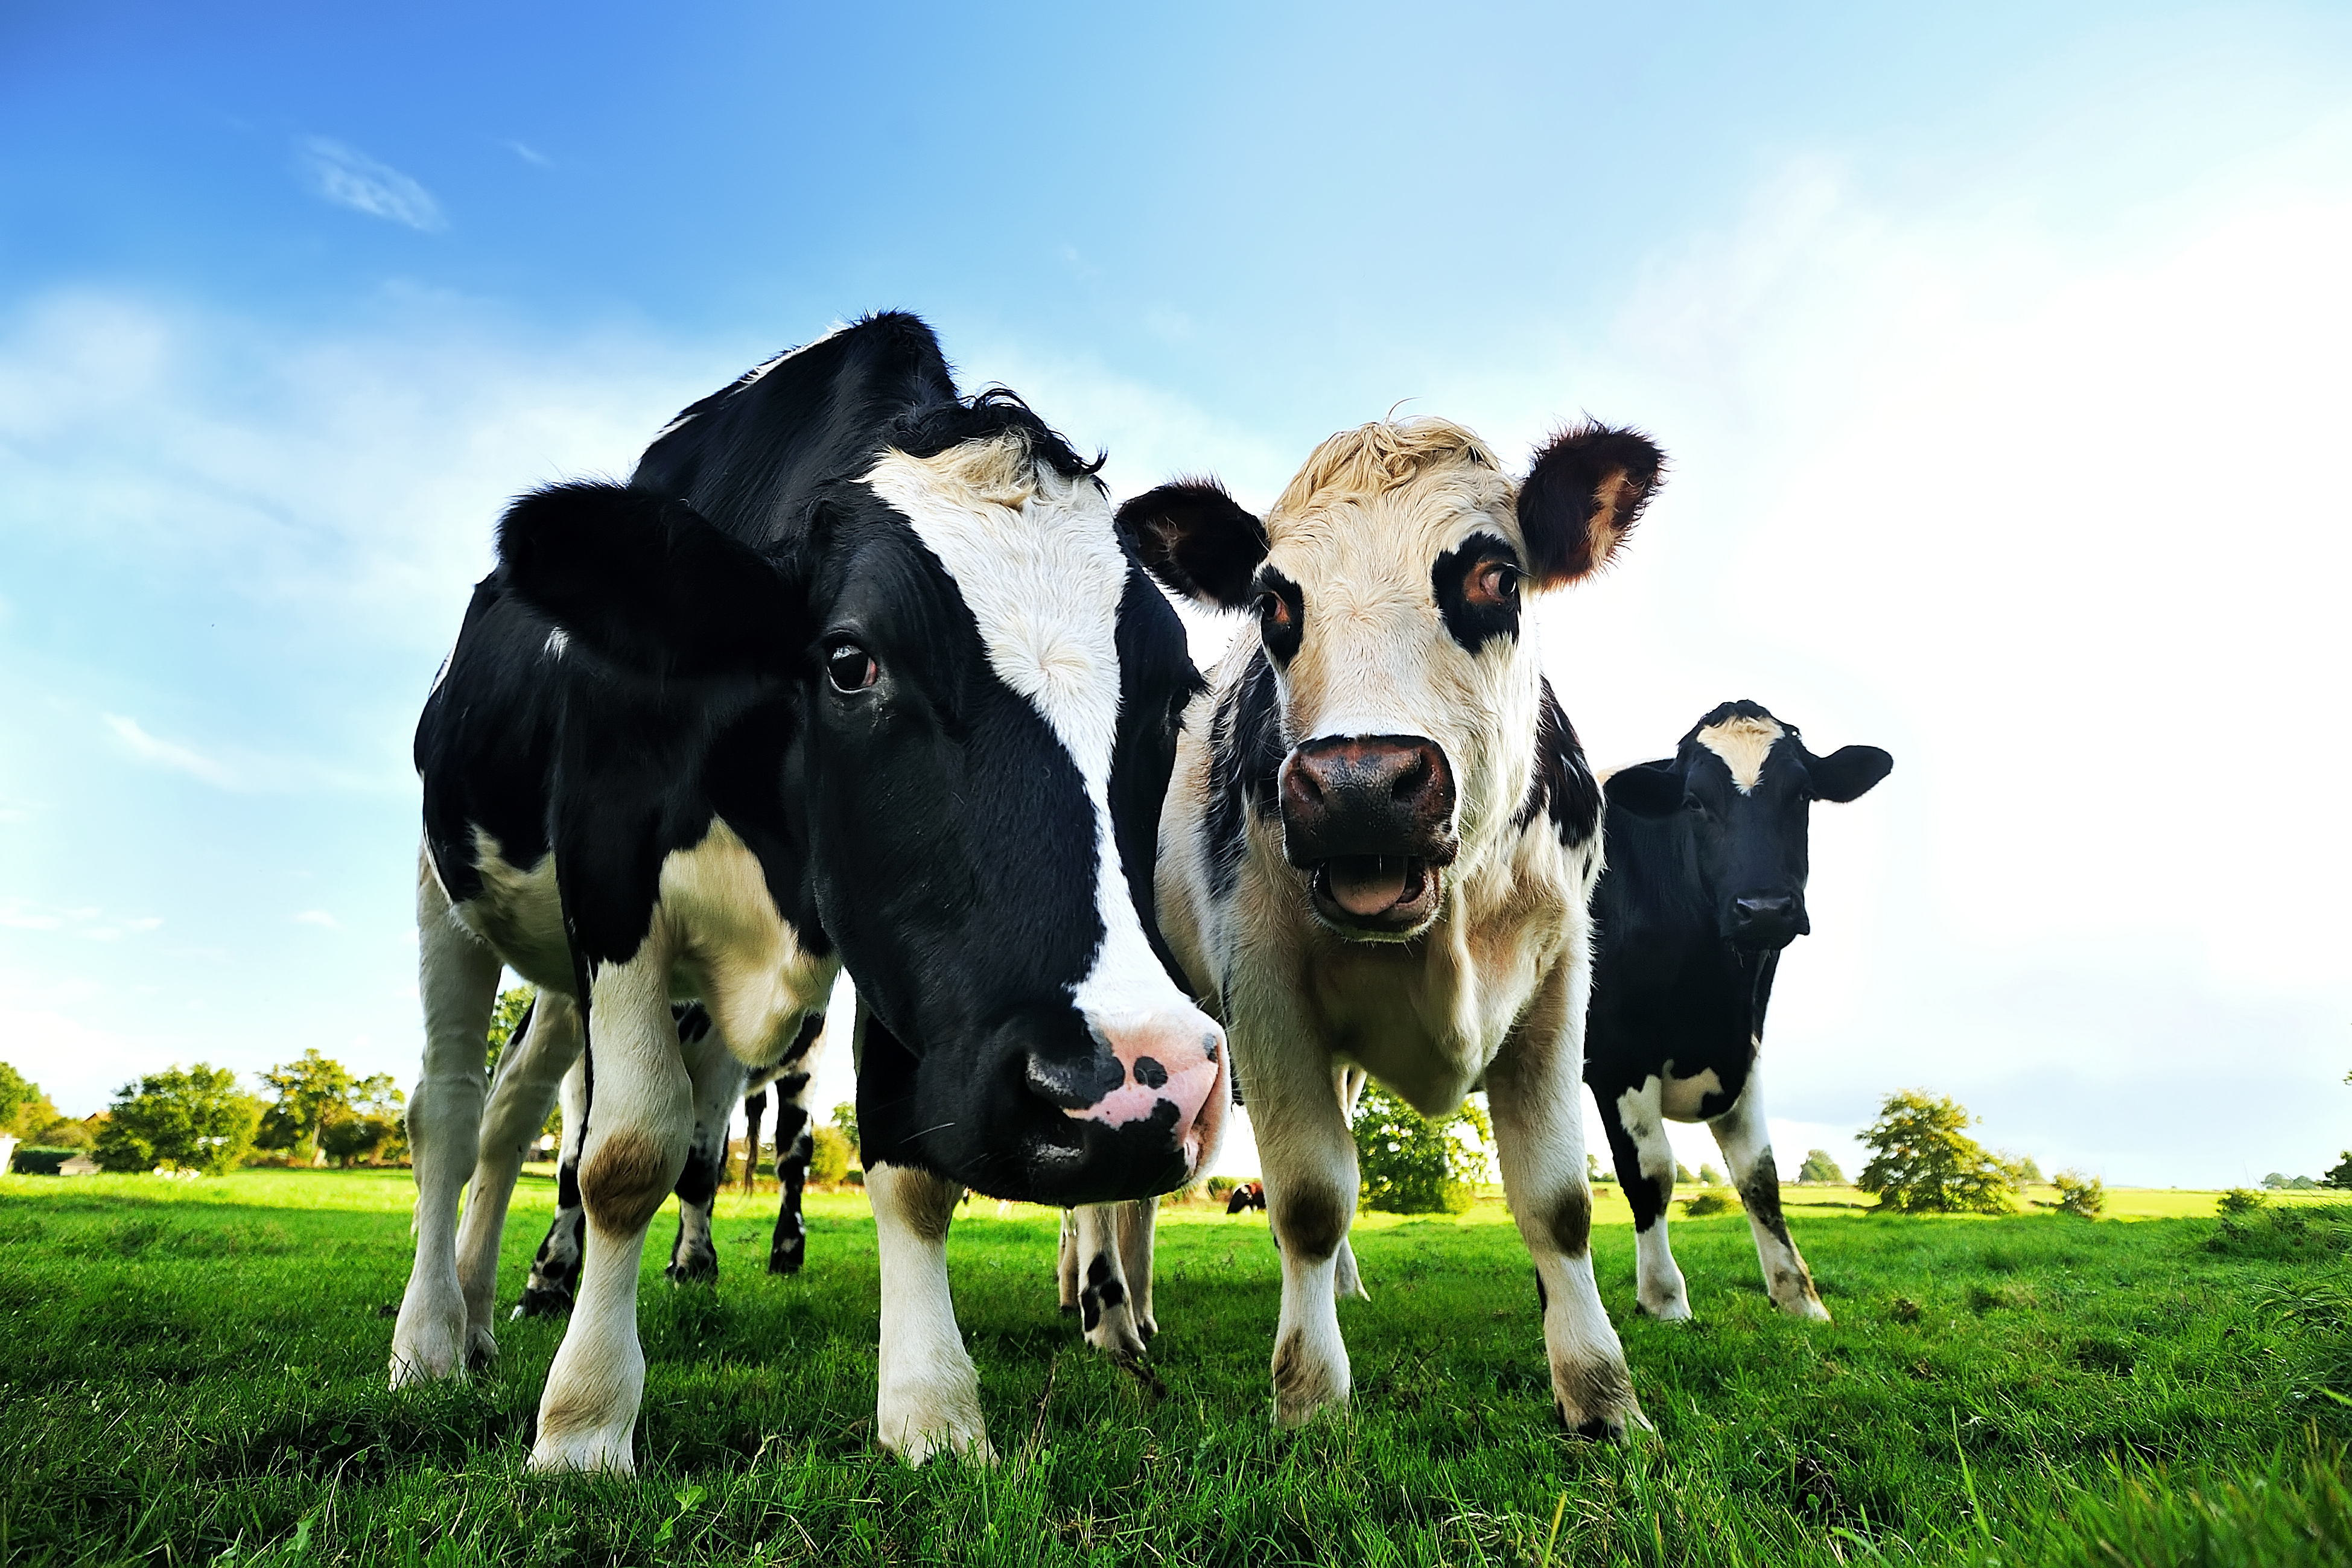 Producción nacional de leche cayó 0,3% en 2021, con resultado mixto entre regiones